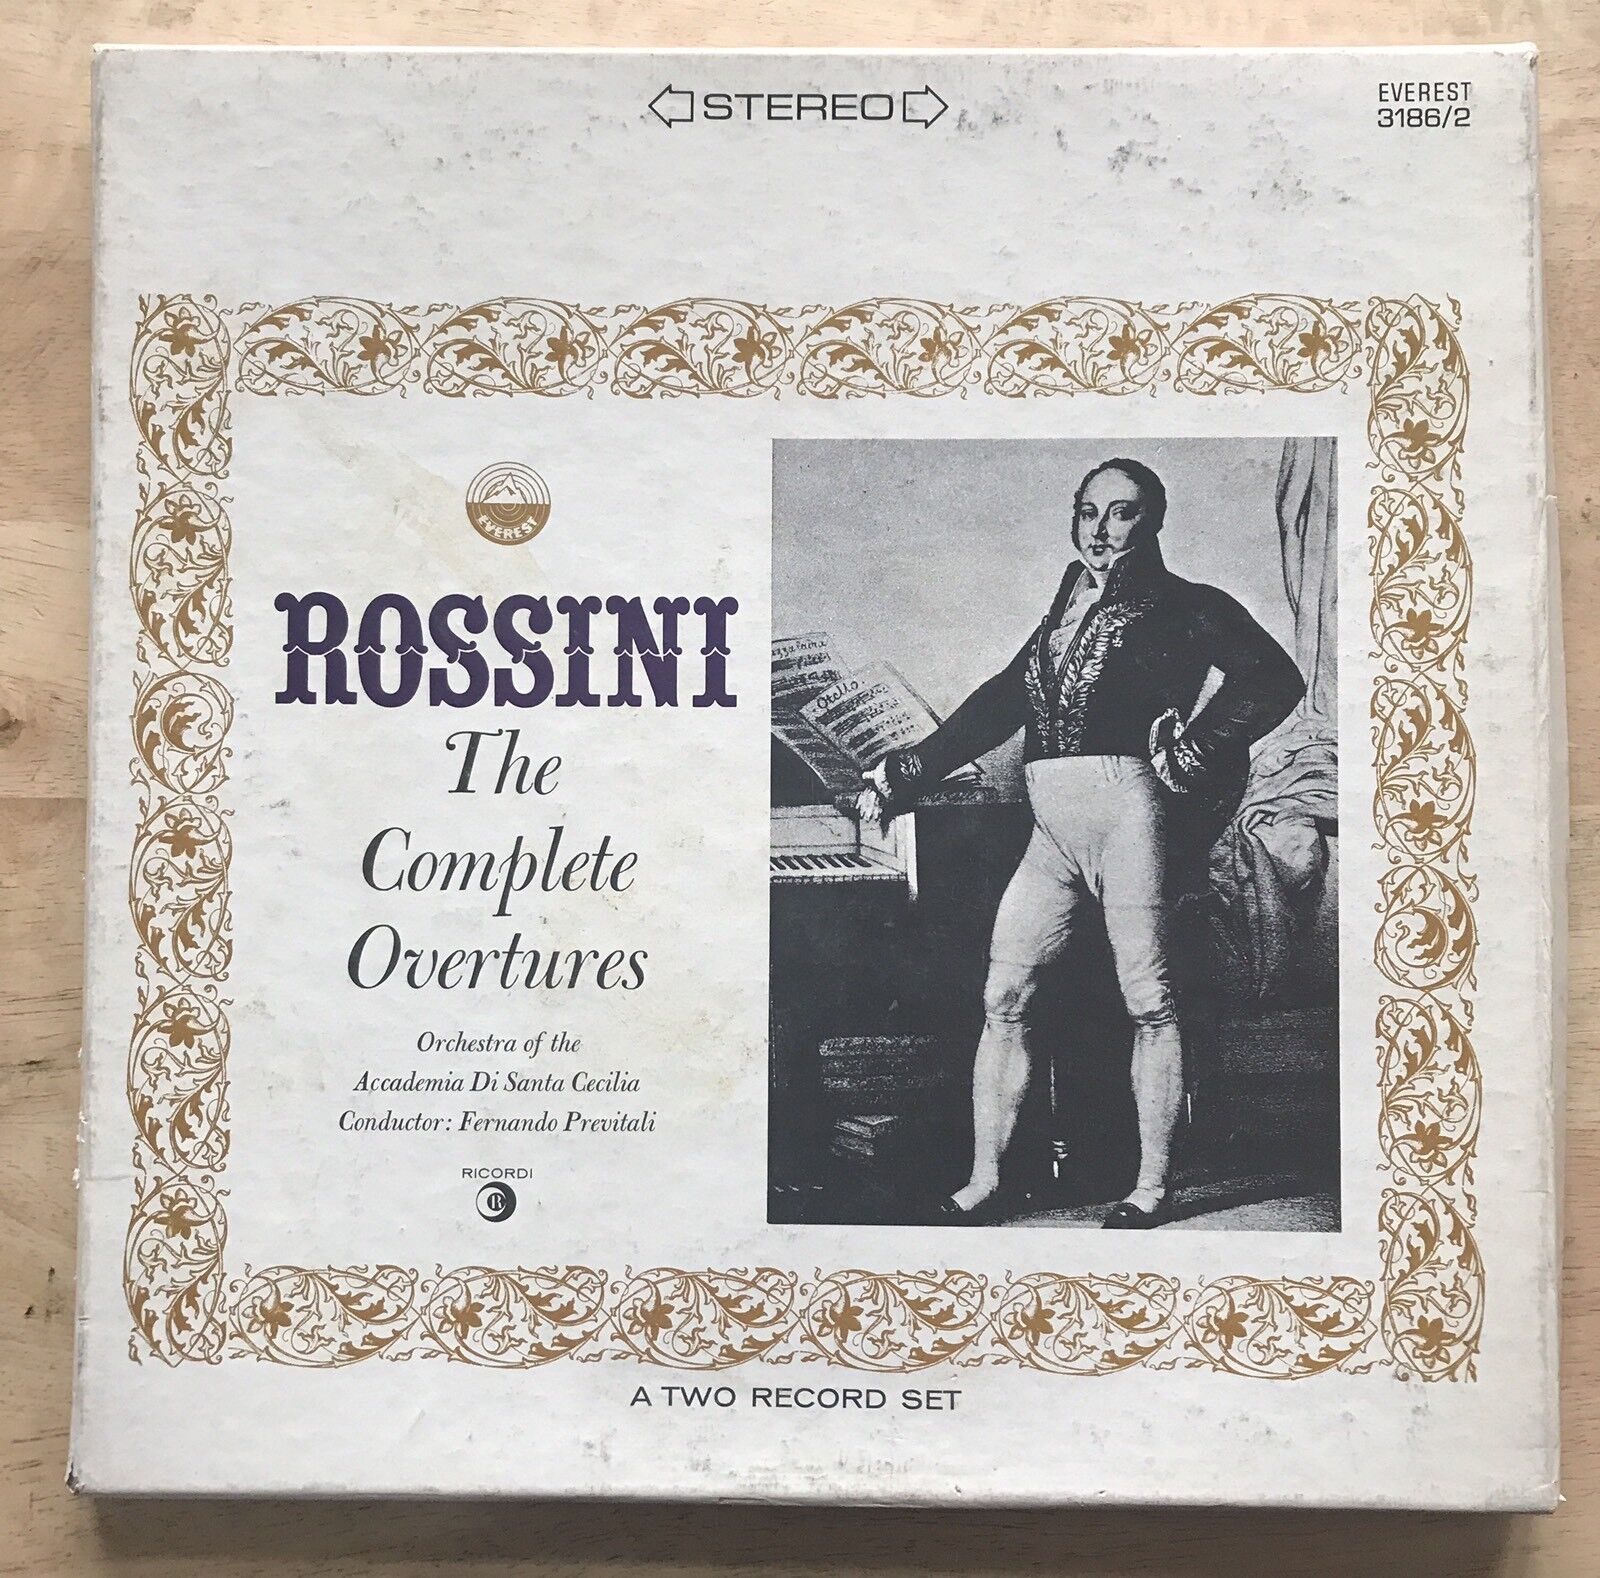 Vintage Rossini - Orchestra Of The Academia Di Santa Cecilia 1908 Vinyl Record